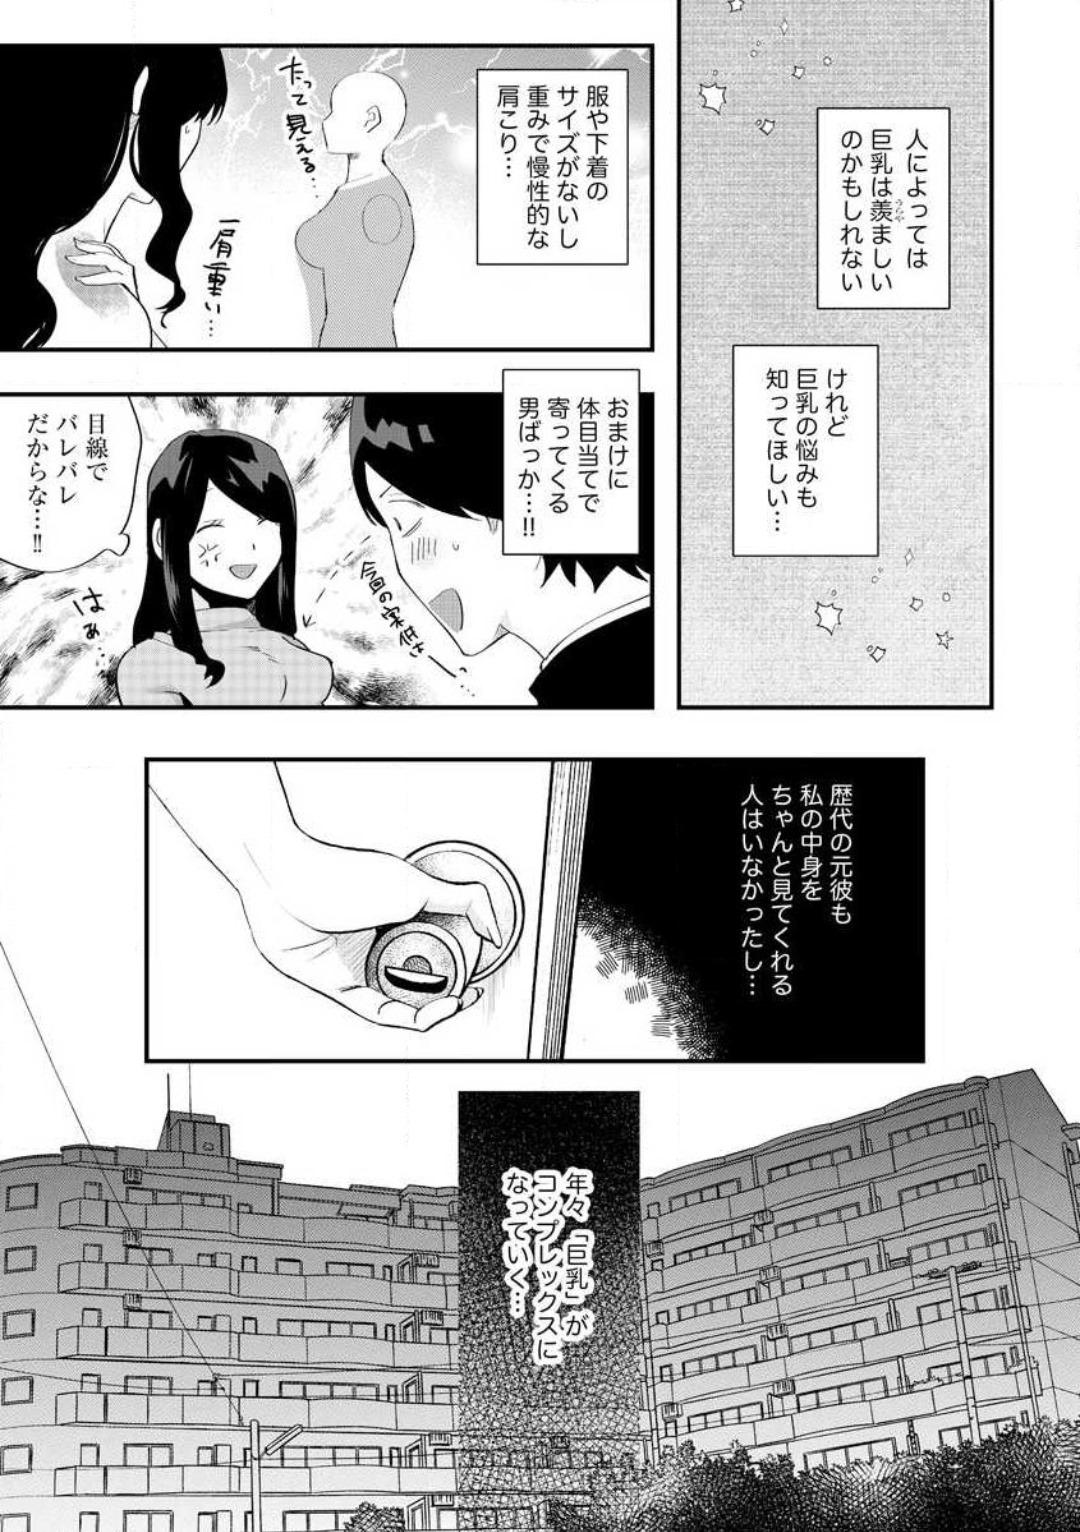 Ōkina ××× ga Hairimasen! 〜 Dekiai Kare wa Kamokude Zetsurin 〜 1-6 8